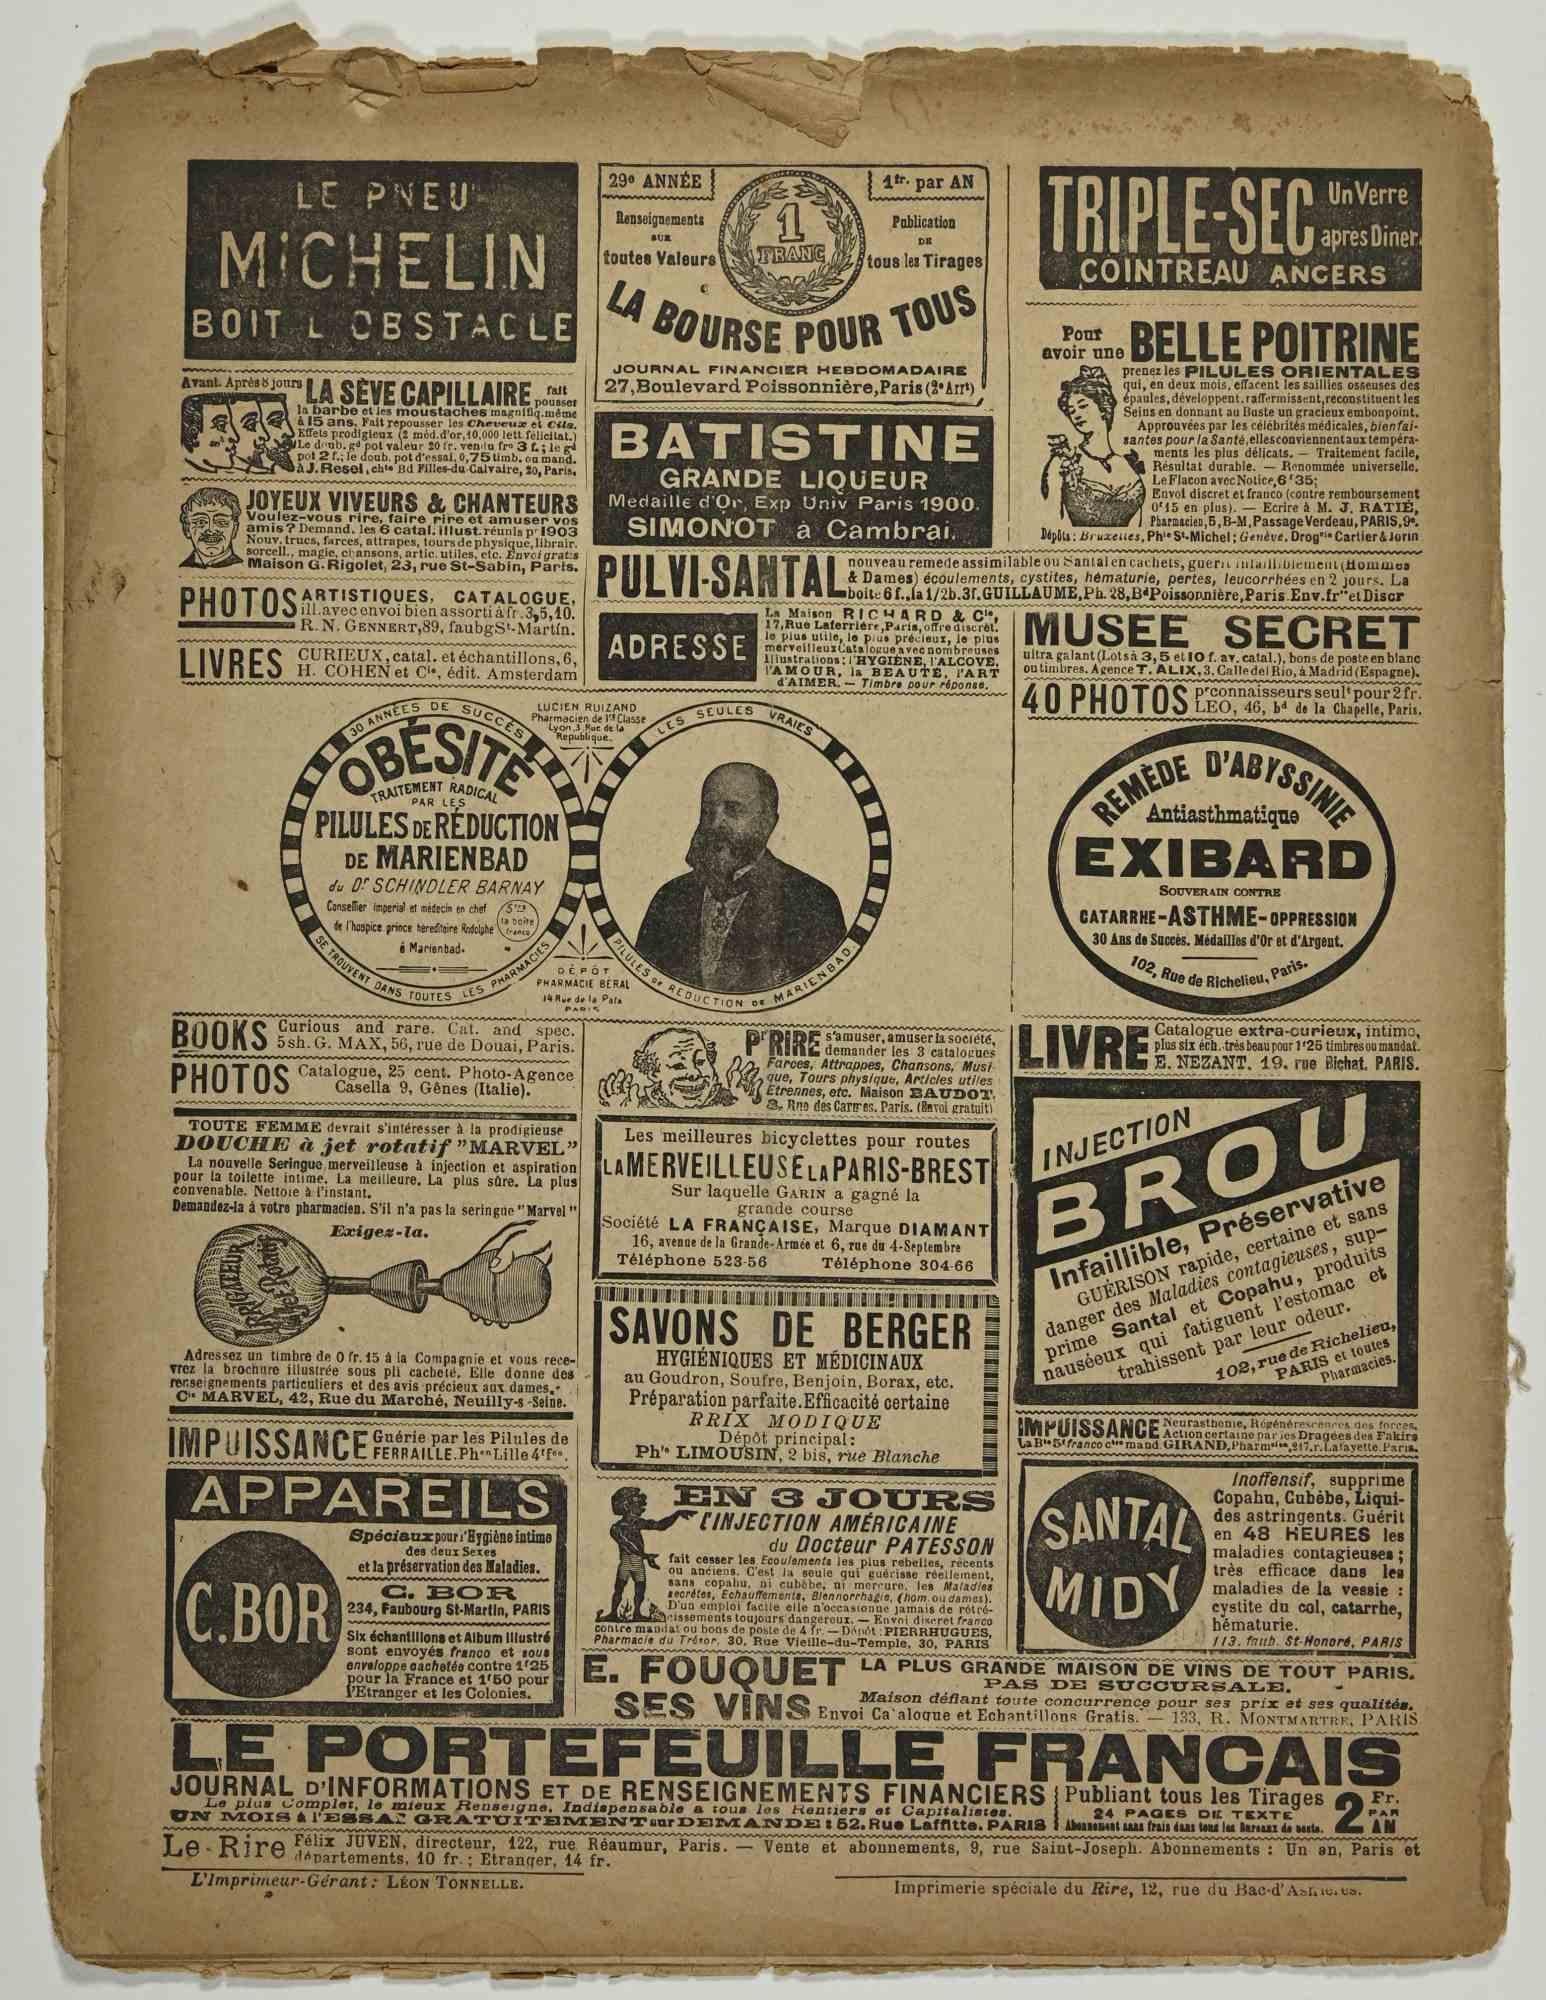 Le Rire - Magazine illustré d'après Lucien Metivet - 1902 - Moderne Art par Lucien Métivet